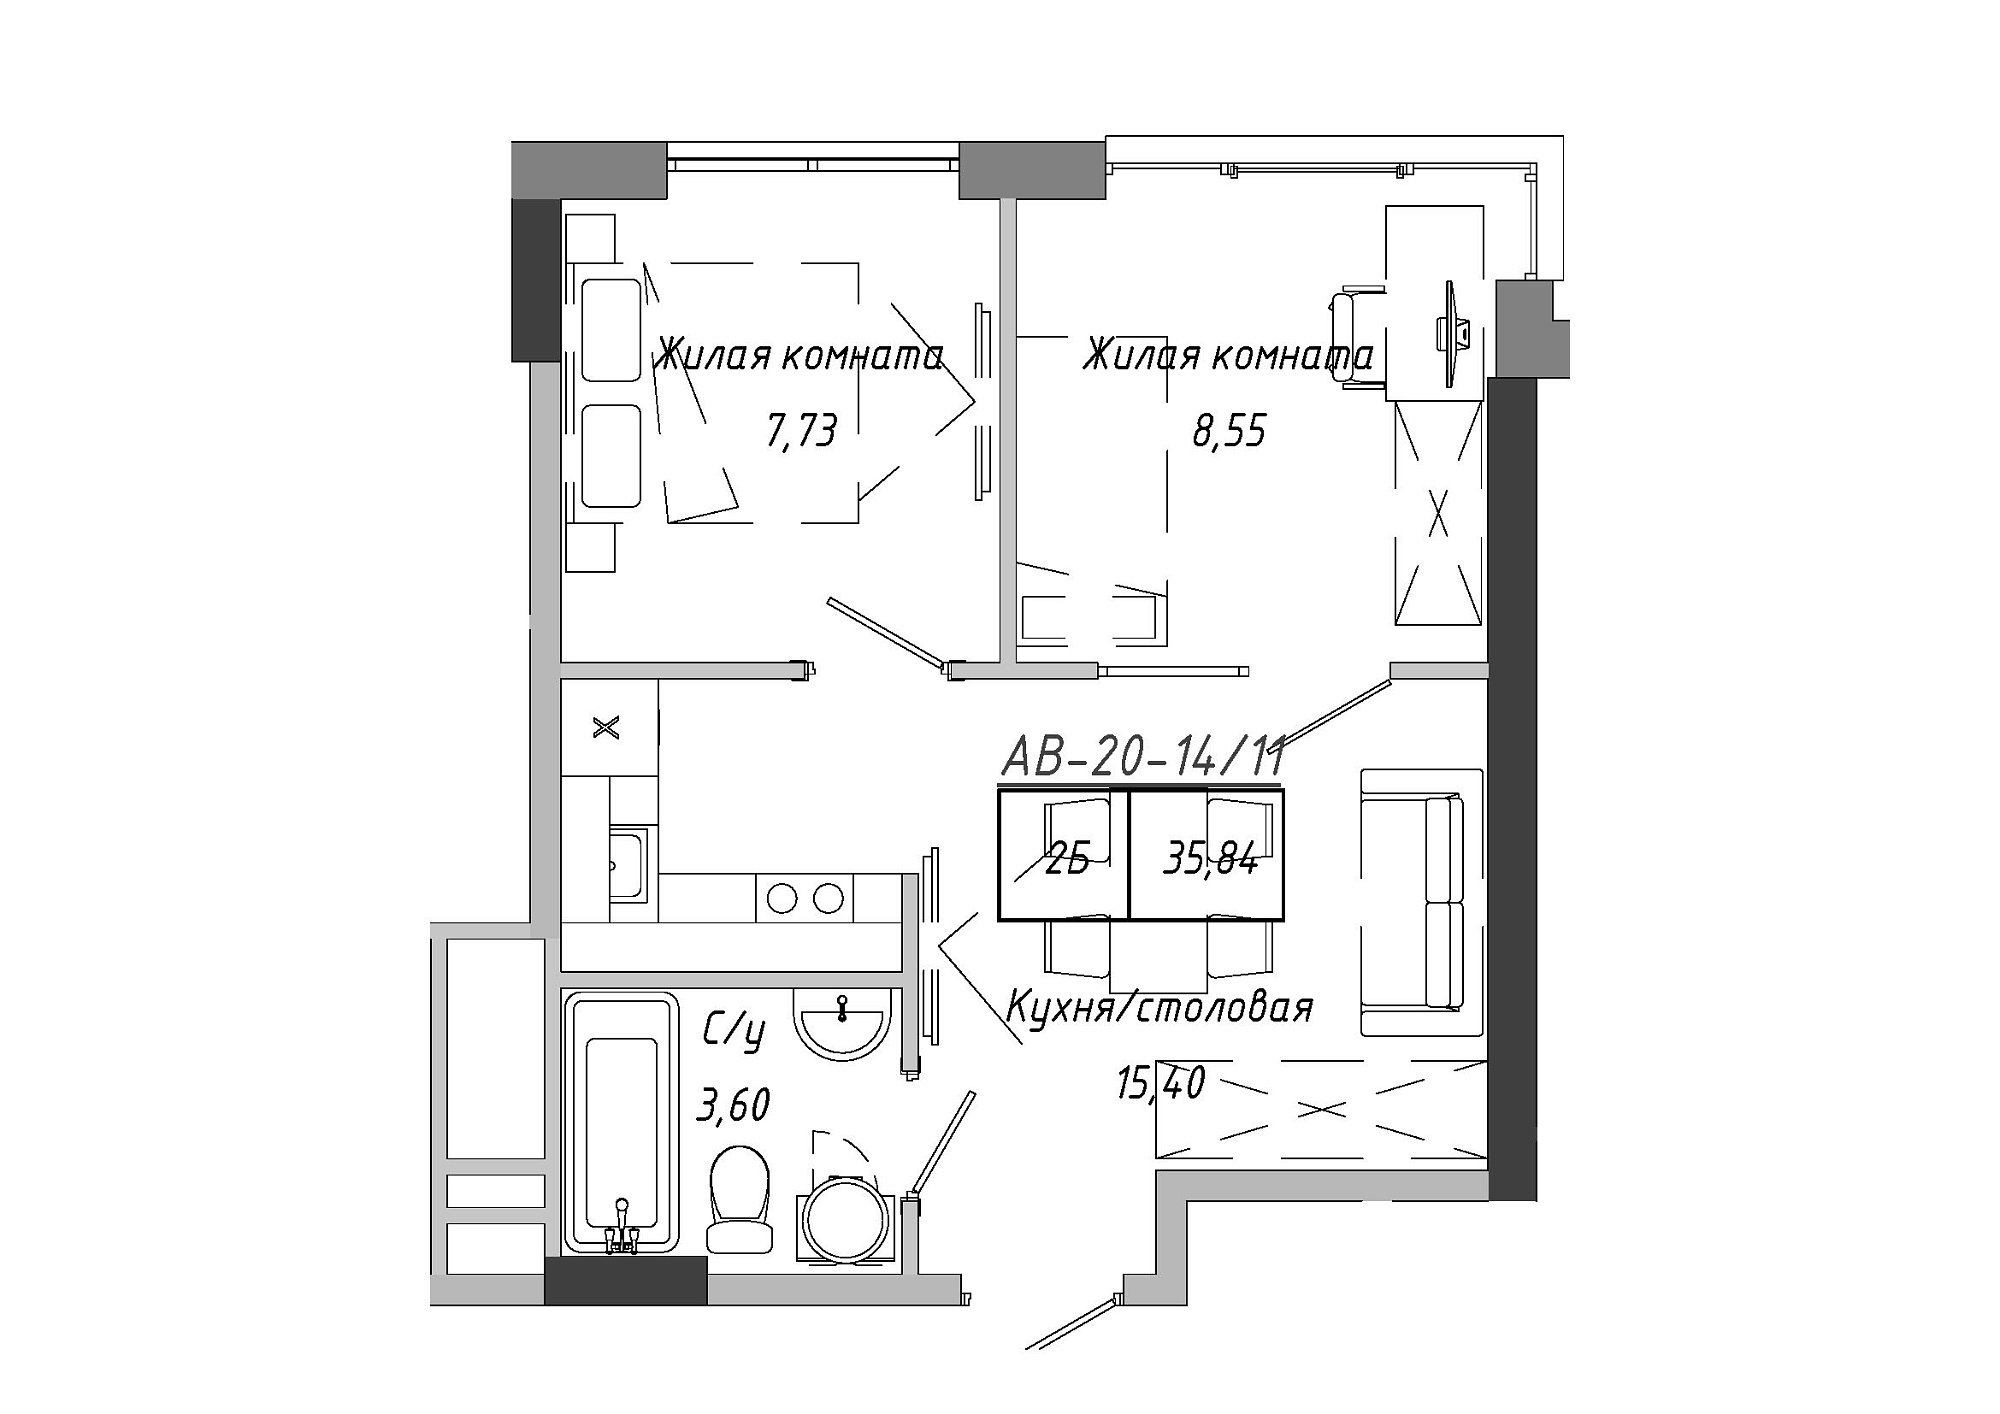 Планування 2-к квартира площею 35.84м2, AB-20-14/00111.